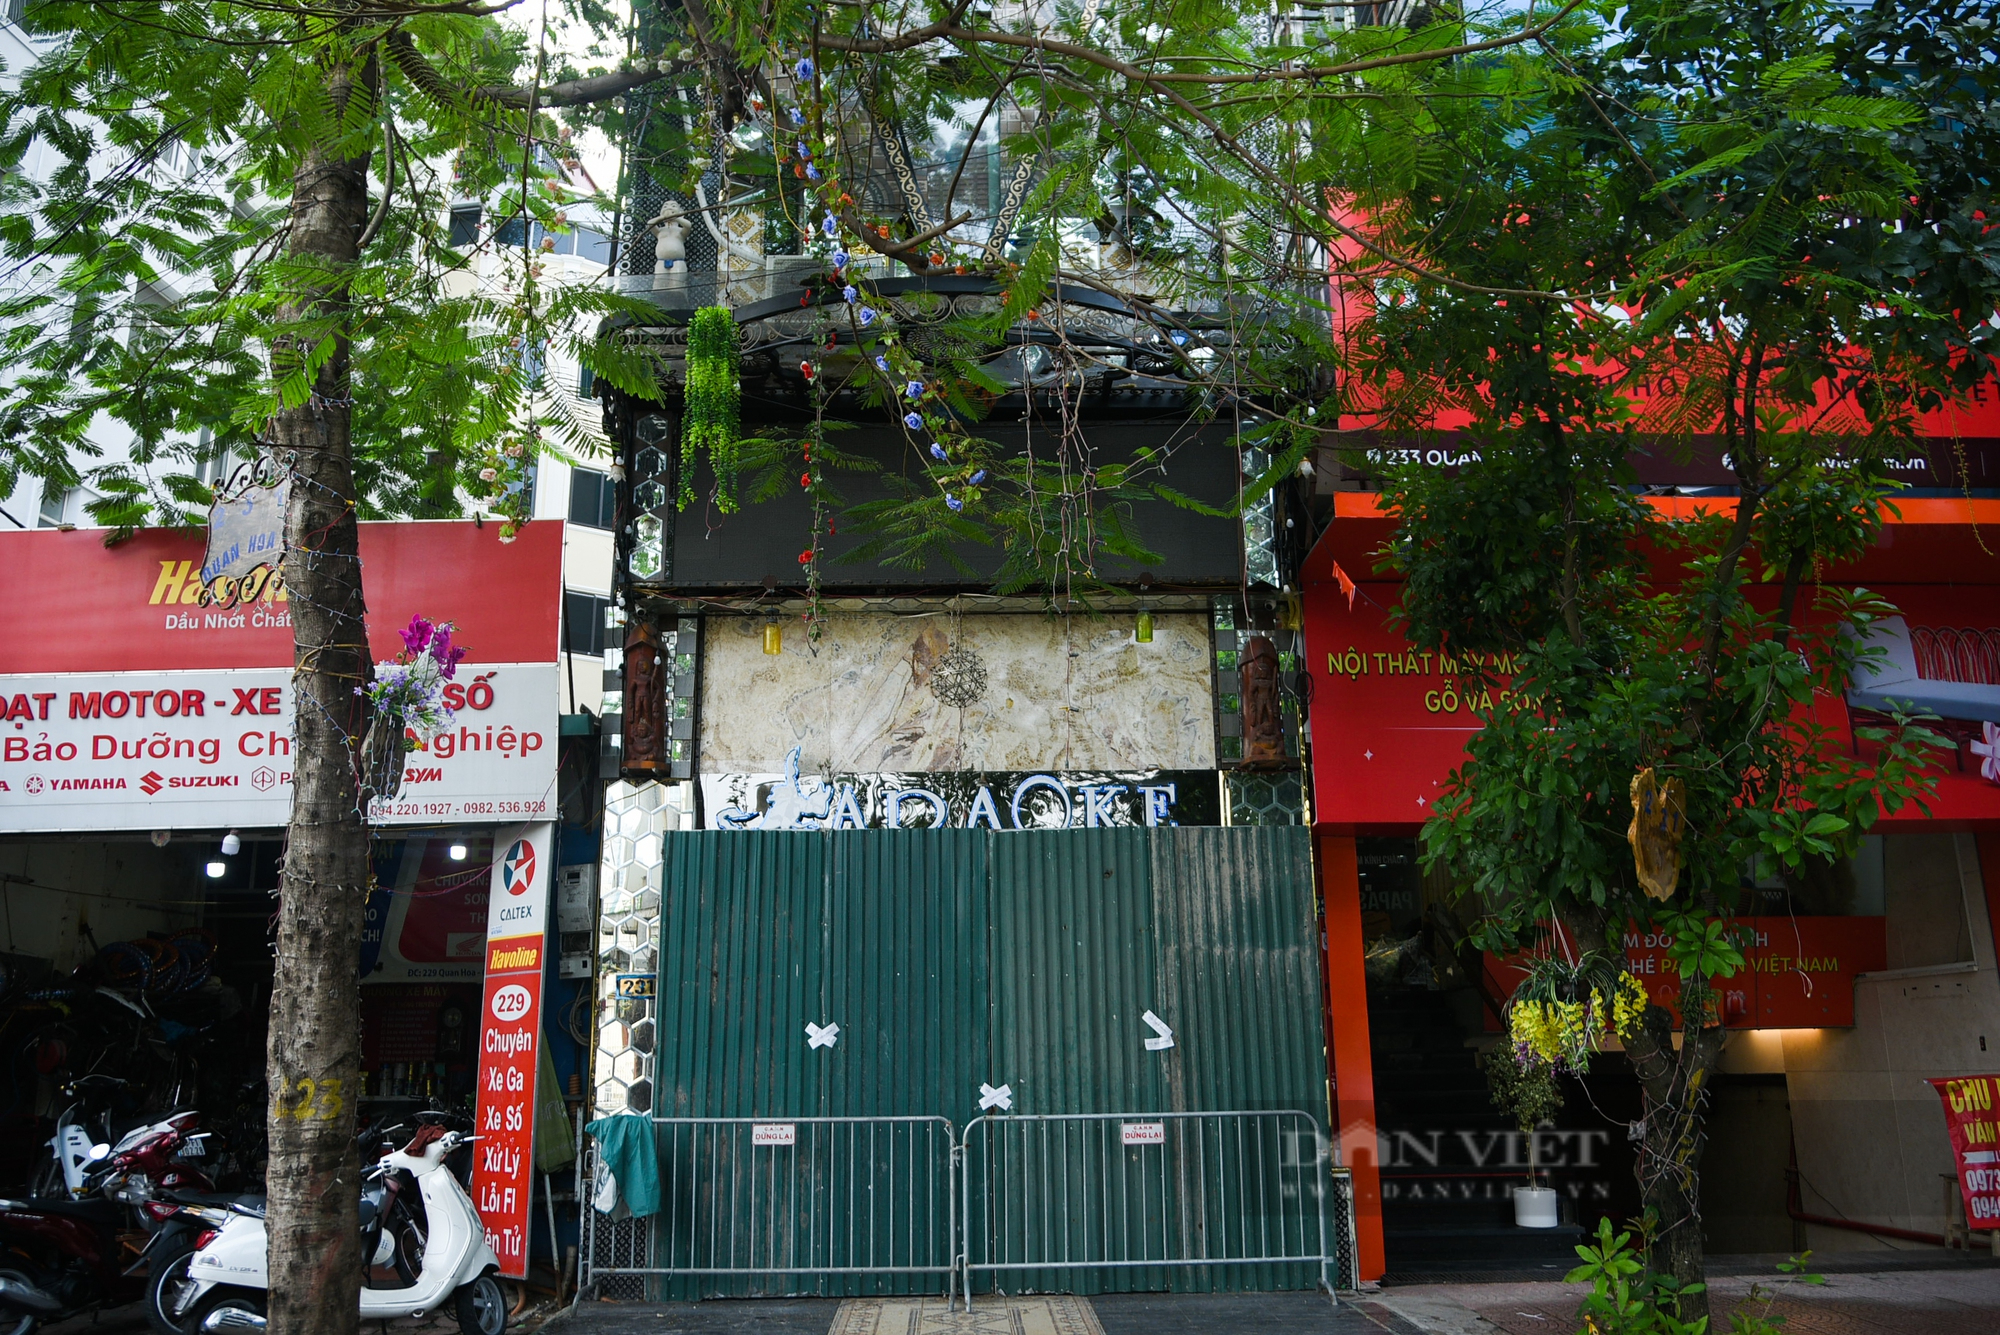 Sau hàng loạt vụ cháy, nhiều quán karaoke ở Hà Nội rơi vào tình trạng ế khách - Ảnh 12.